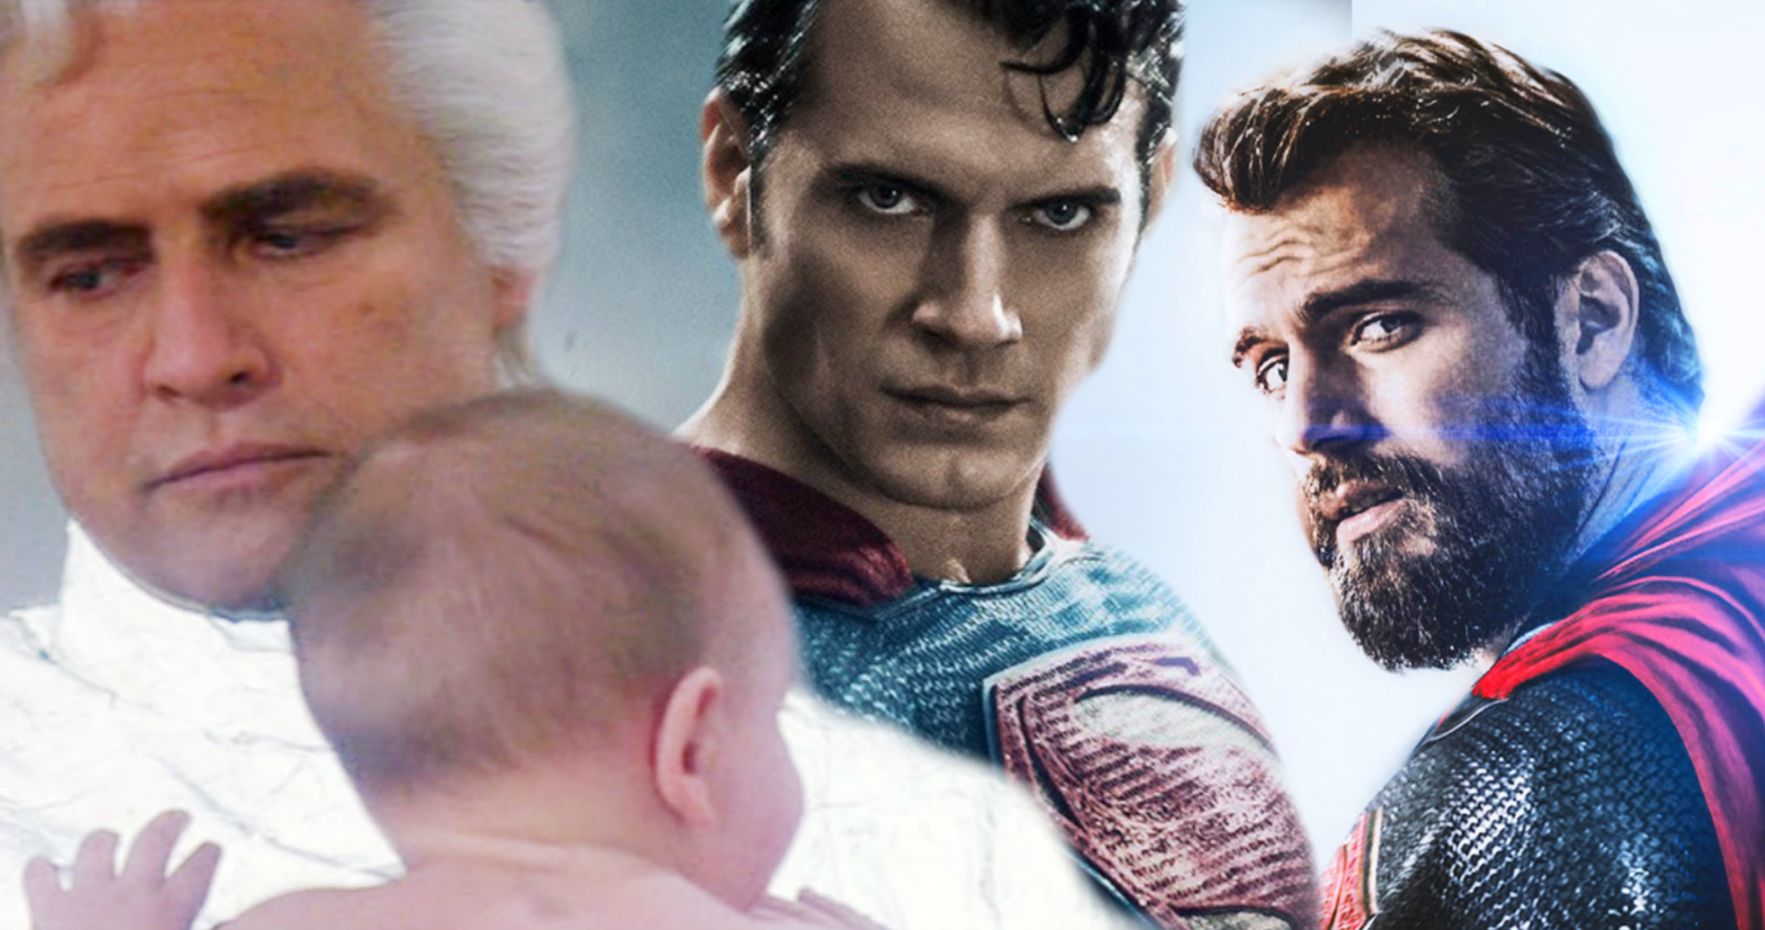 Superman's Perceived Lack of Relevance at Warner Bros. Sparks Online Outrage